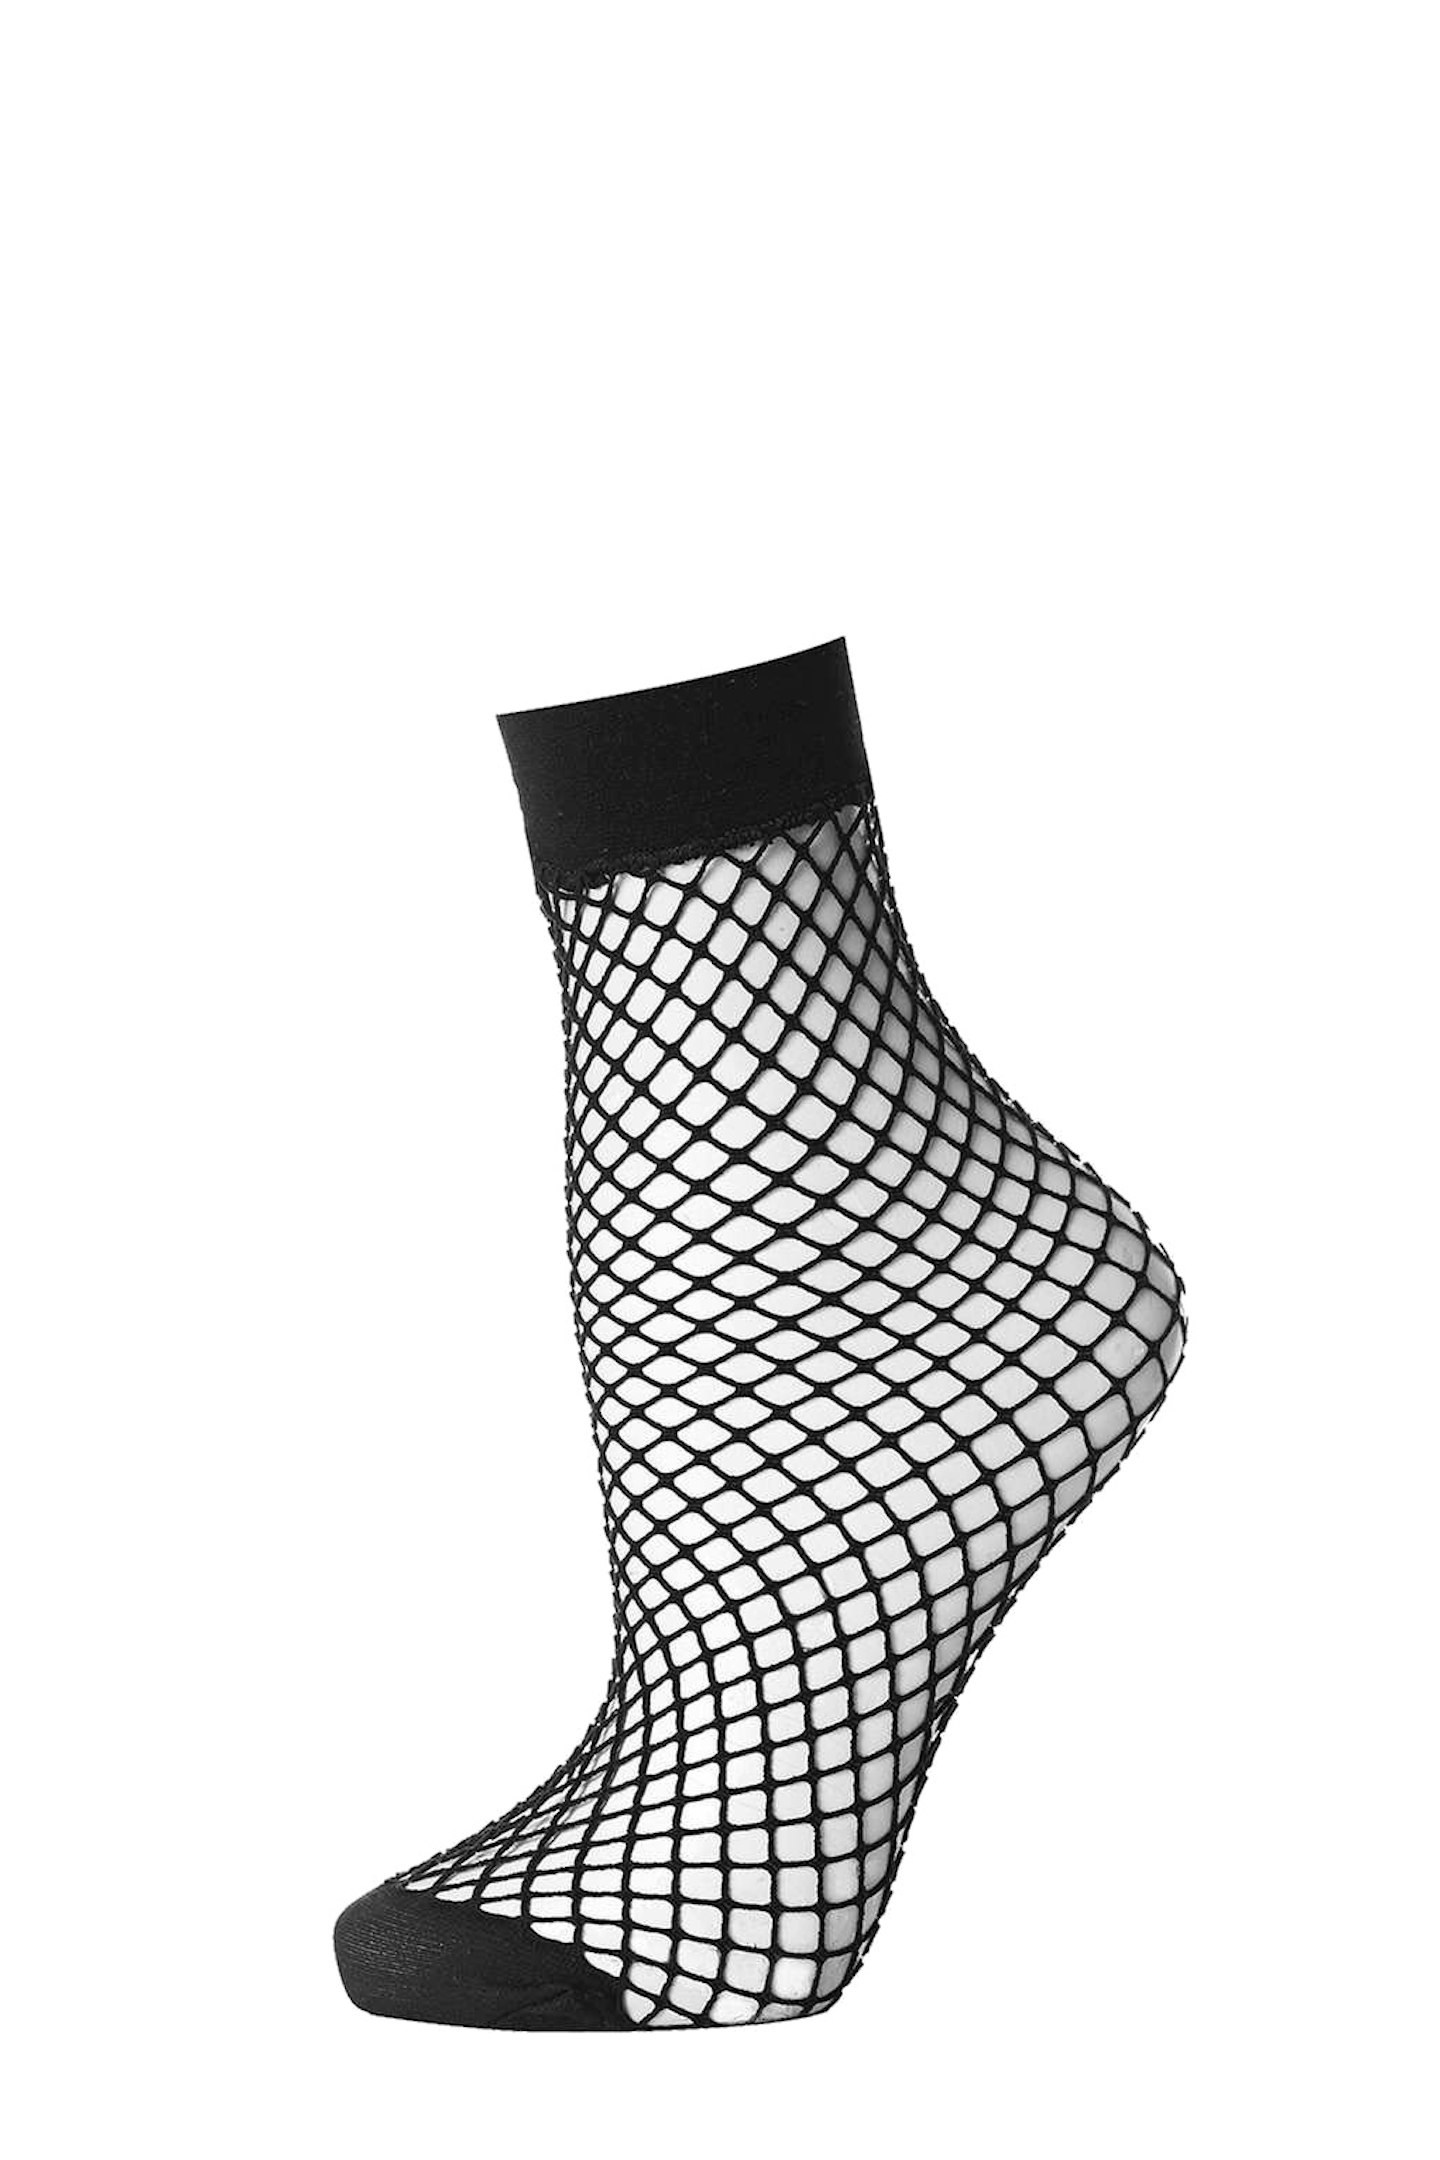 Black fishnet ankle sock